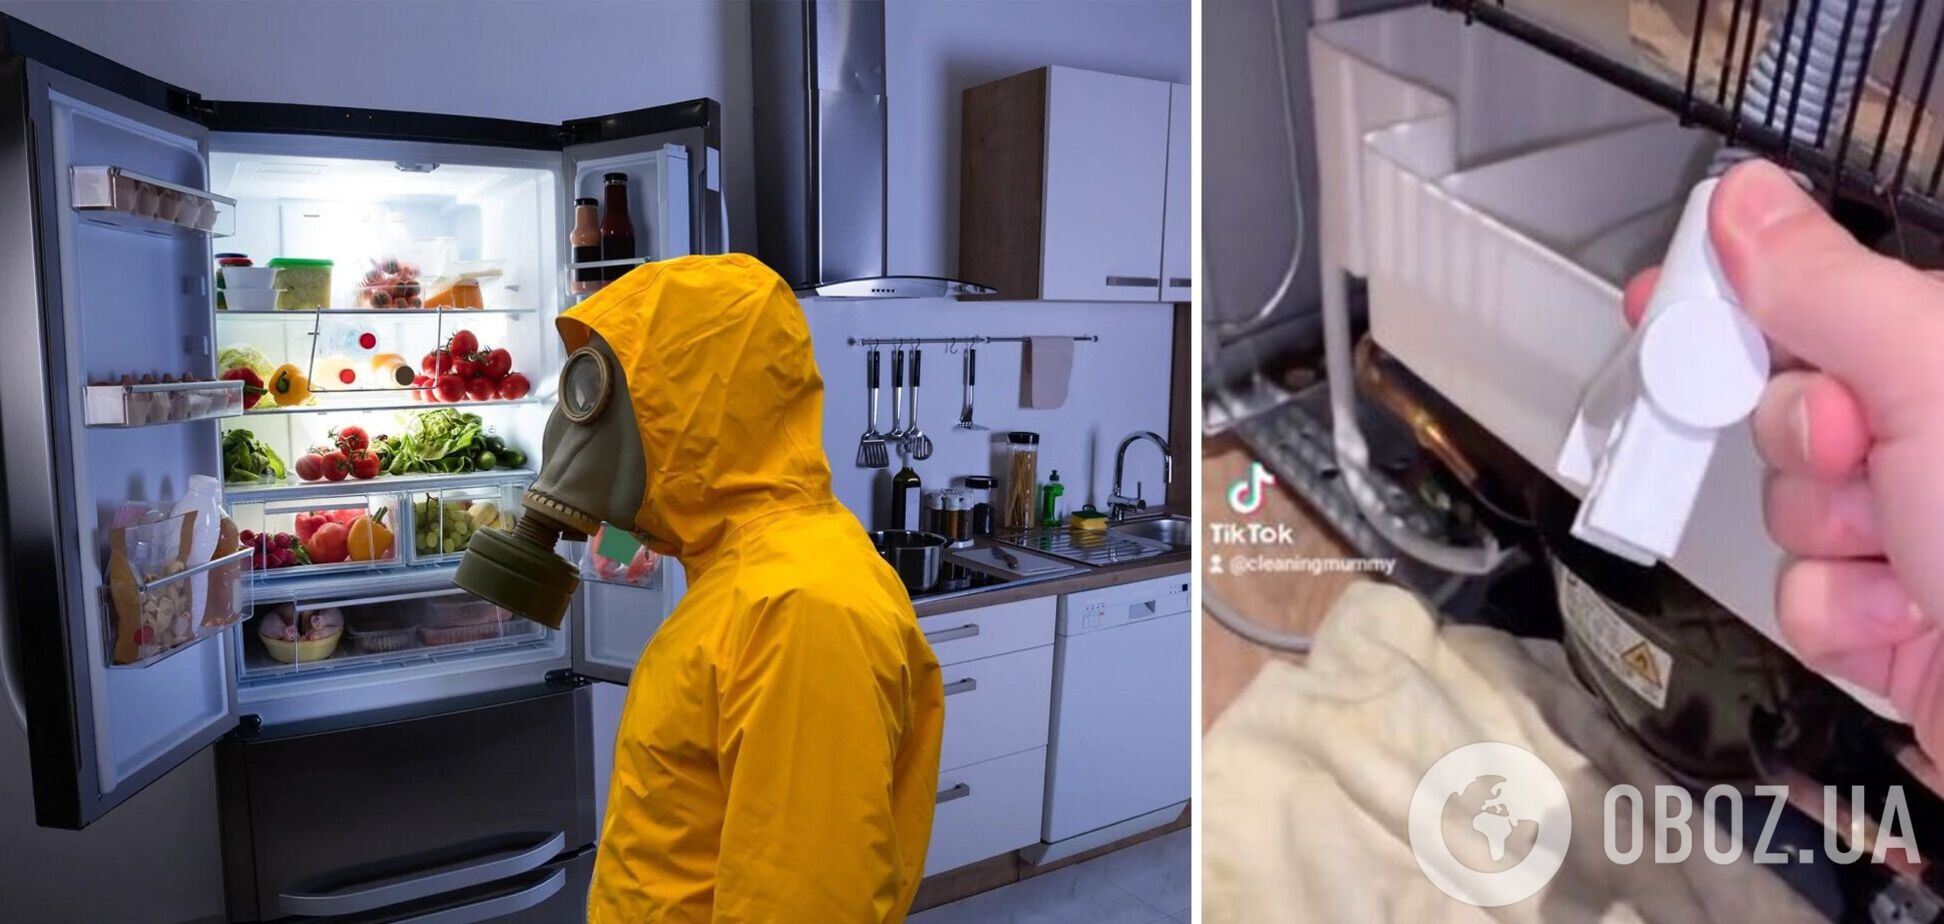 Как избавиться от холодильника: женщина обнаружила тайный поддон, который нужно регулярно чистить